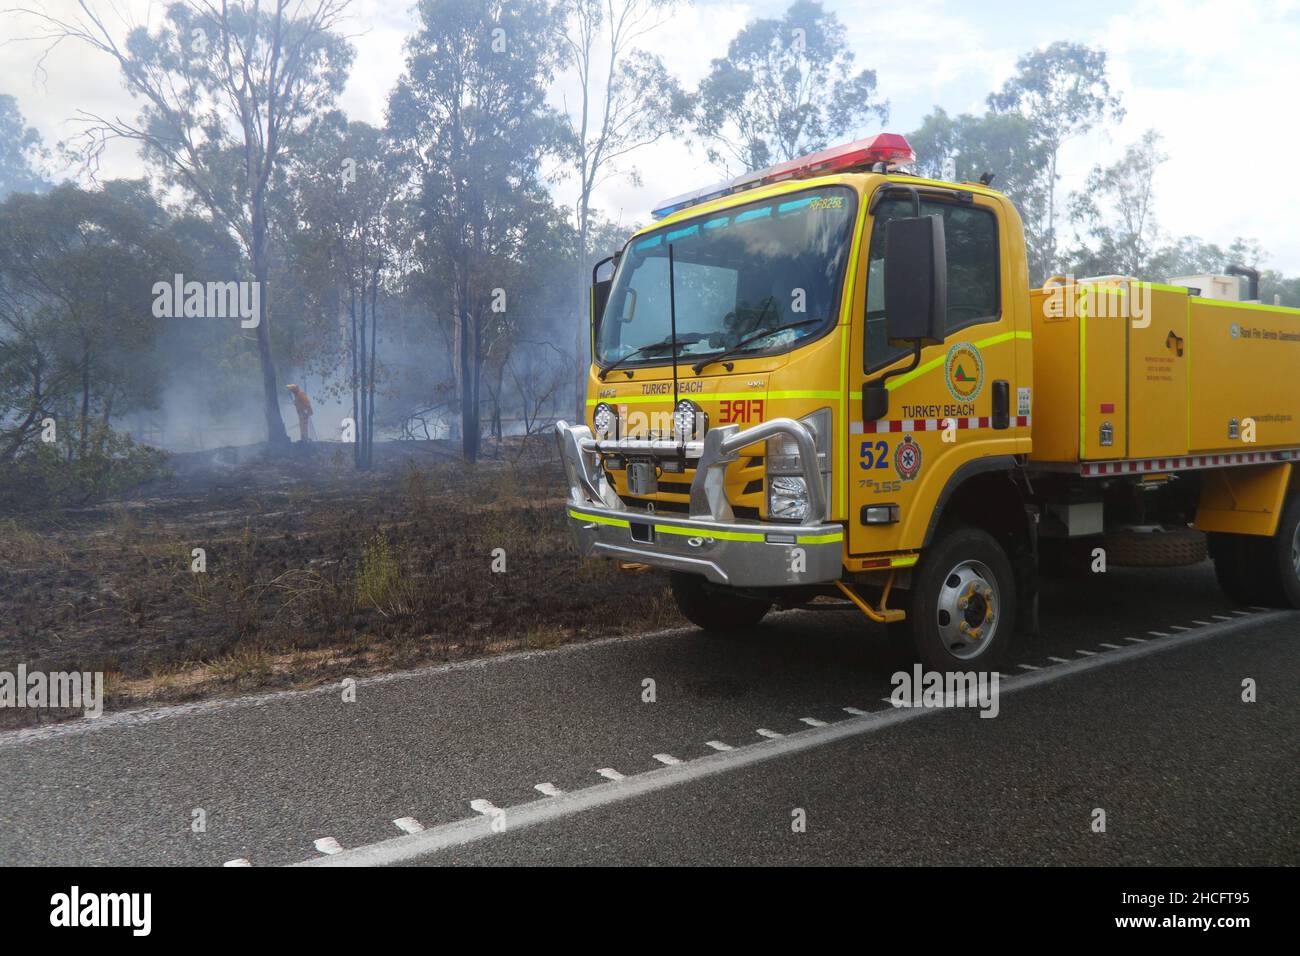 Servicio de Bomberos Rurales de Queensland que asiste a un incendio en carretera, Turquia Beach, centro de Queensland, Australia. Sin RM ni PR Foto de stock